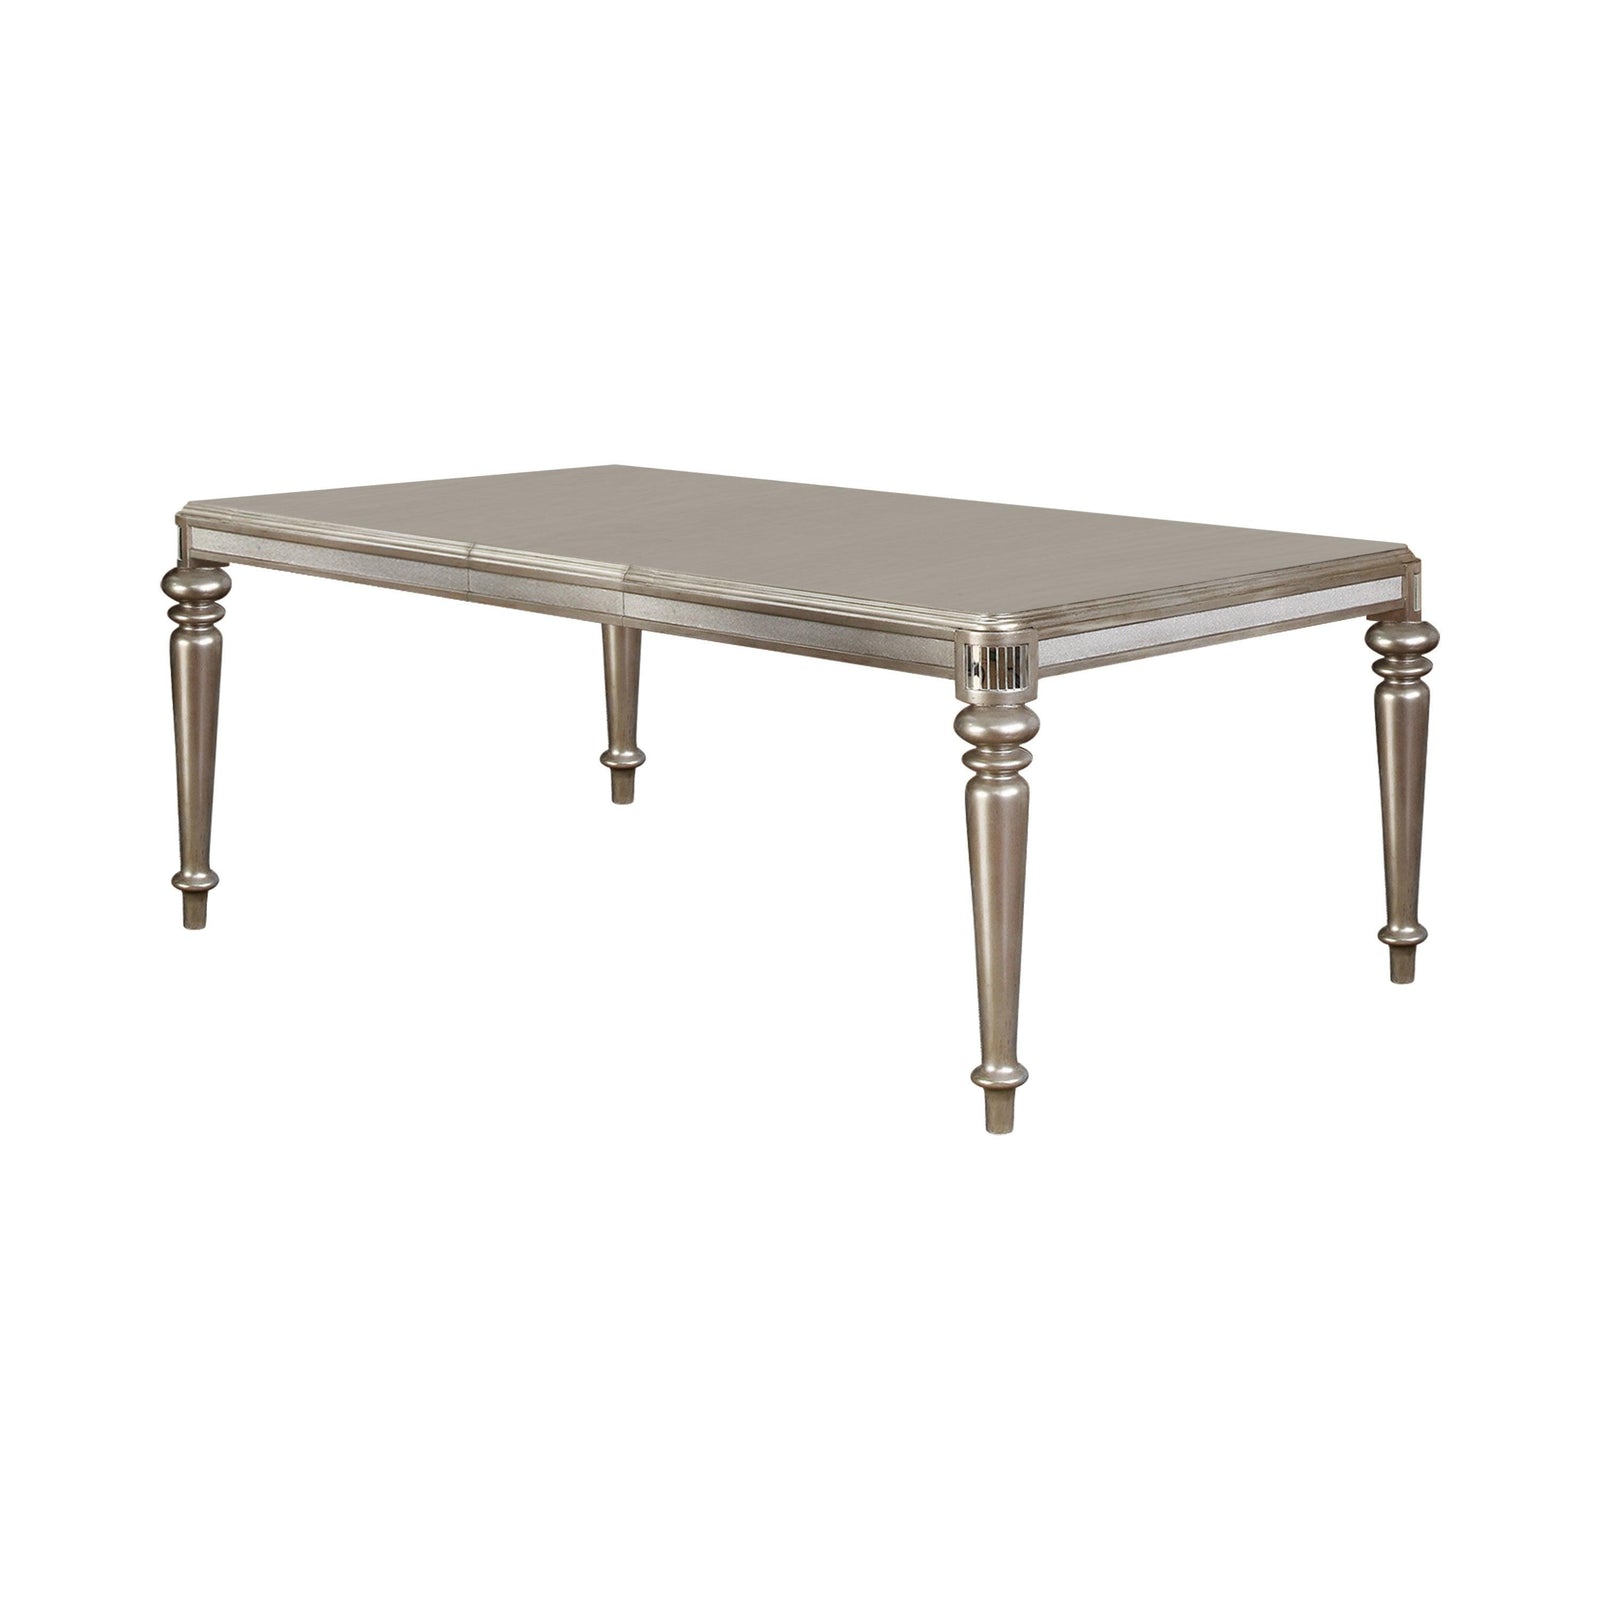 Danette Rectangular Dining Table With Leaf Metallic Platinum - Ella Furniture